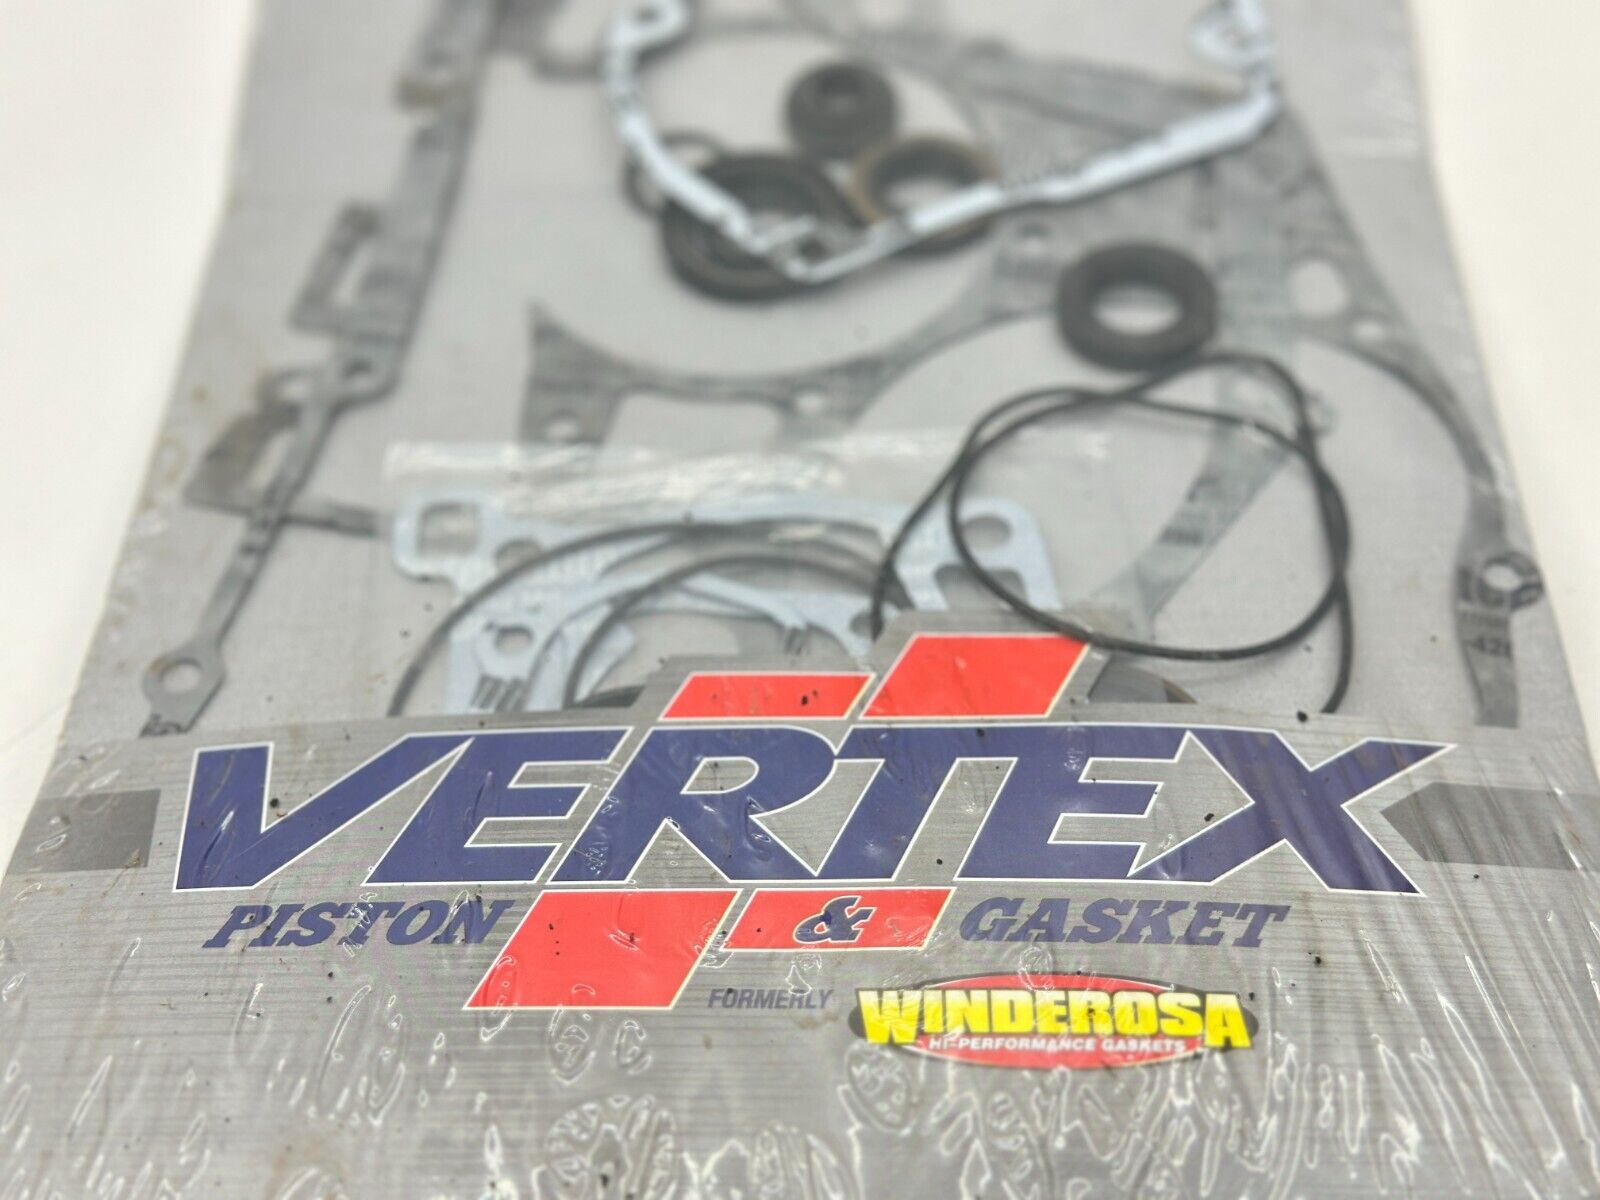 2001 Suzuki RM125 Complete Engine Vertex Gasket Kit Washer Wire Assembly RM 125